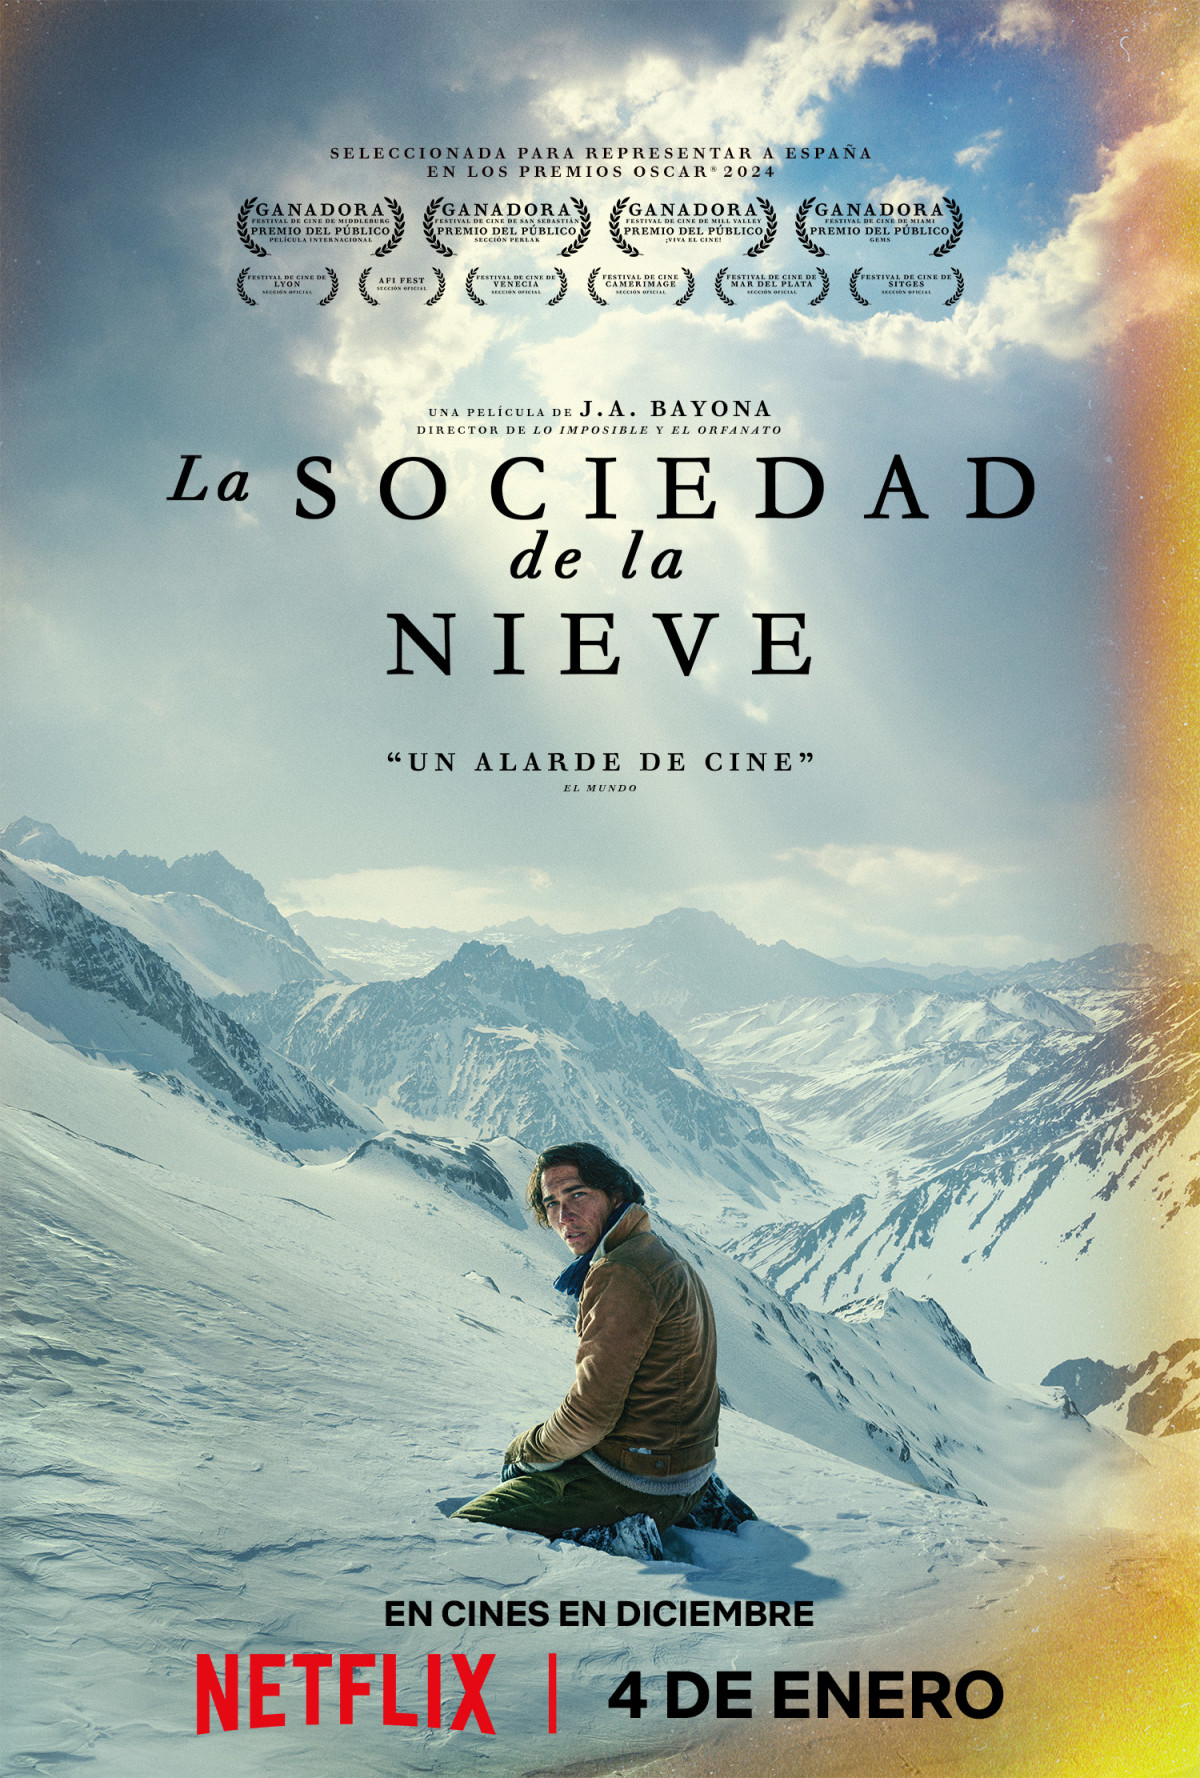 'La sociedad de la nieve': más películas, documentales, libros y podcasts acerca del accidente de los Andes, quienes no regresaron y los supervivientes.